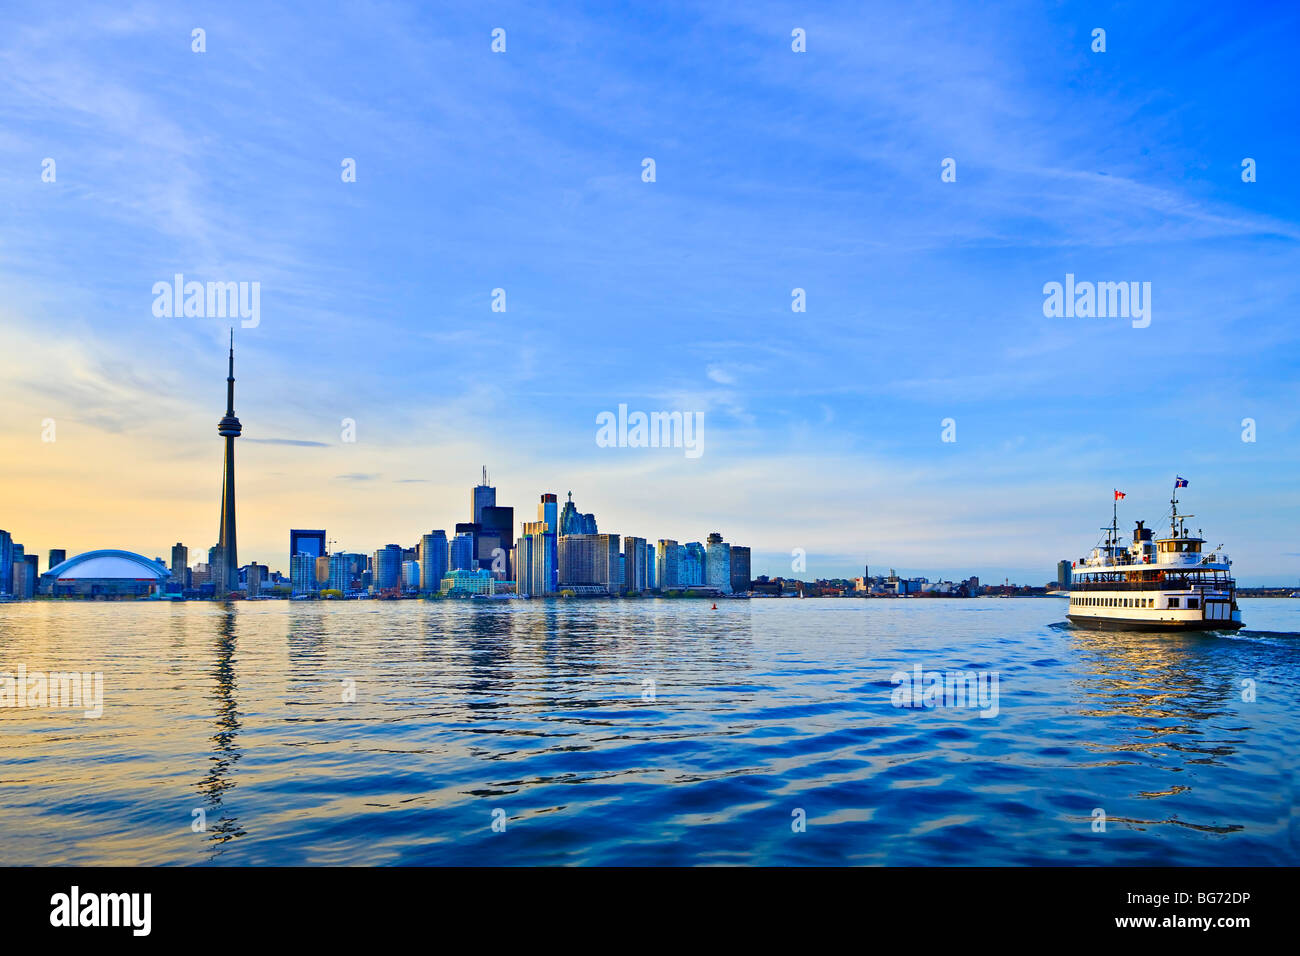 El horizonte de Toronto con la CN Tower y el Ferry de las Islas de Toronto, la ciudad de Toronto, Ontario, Canadá. Foto de stock